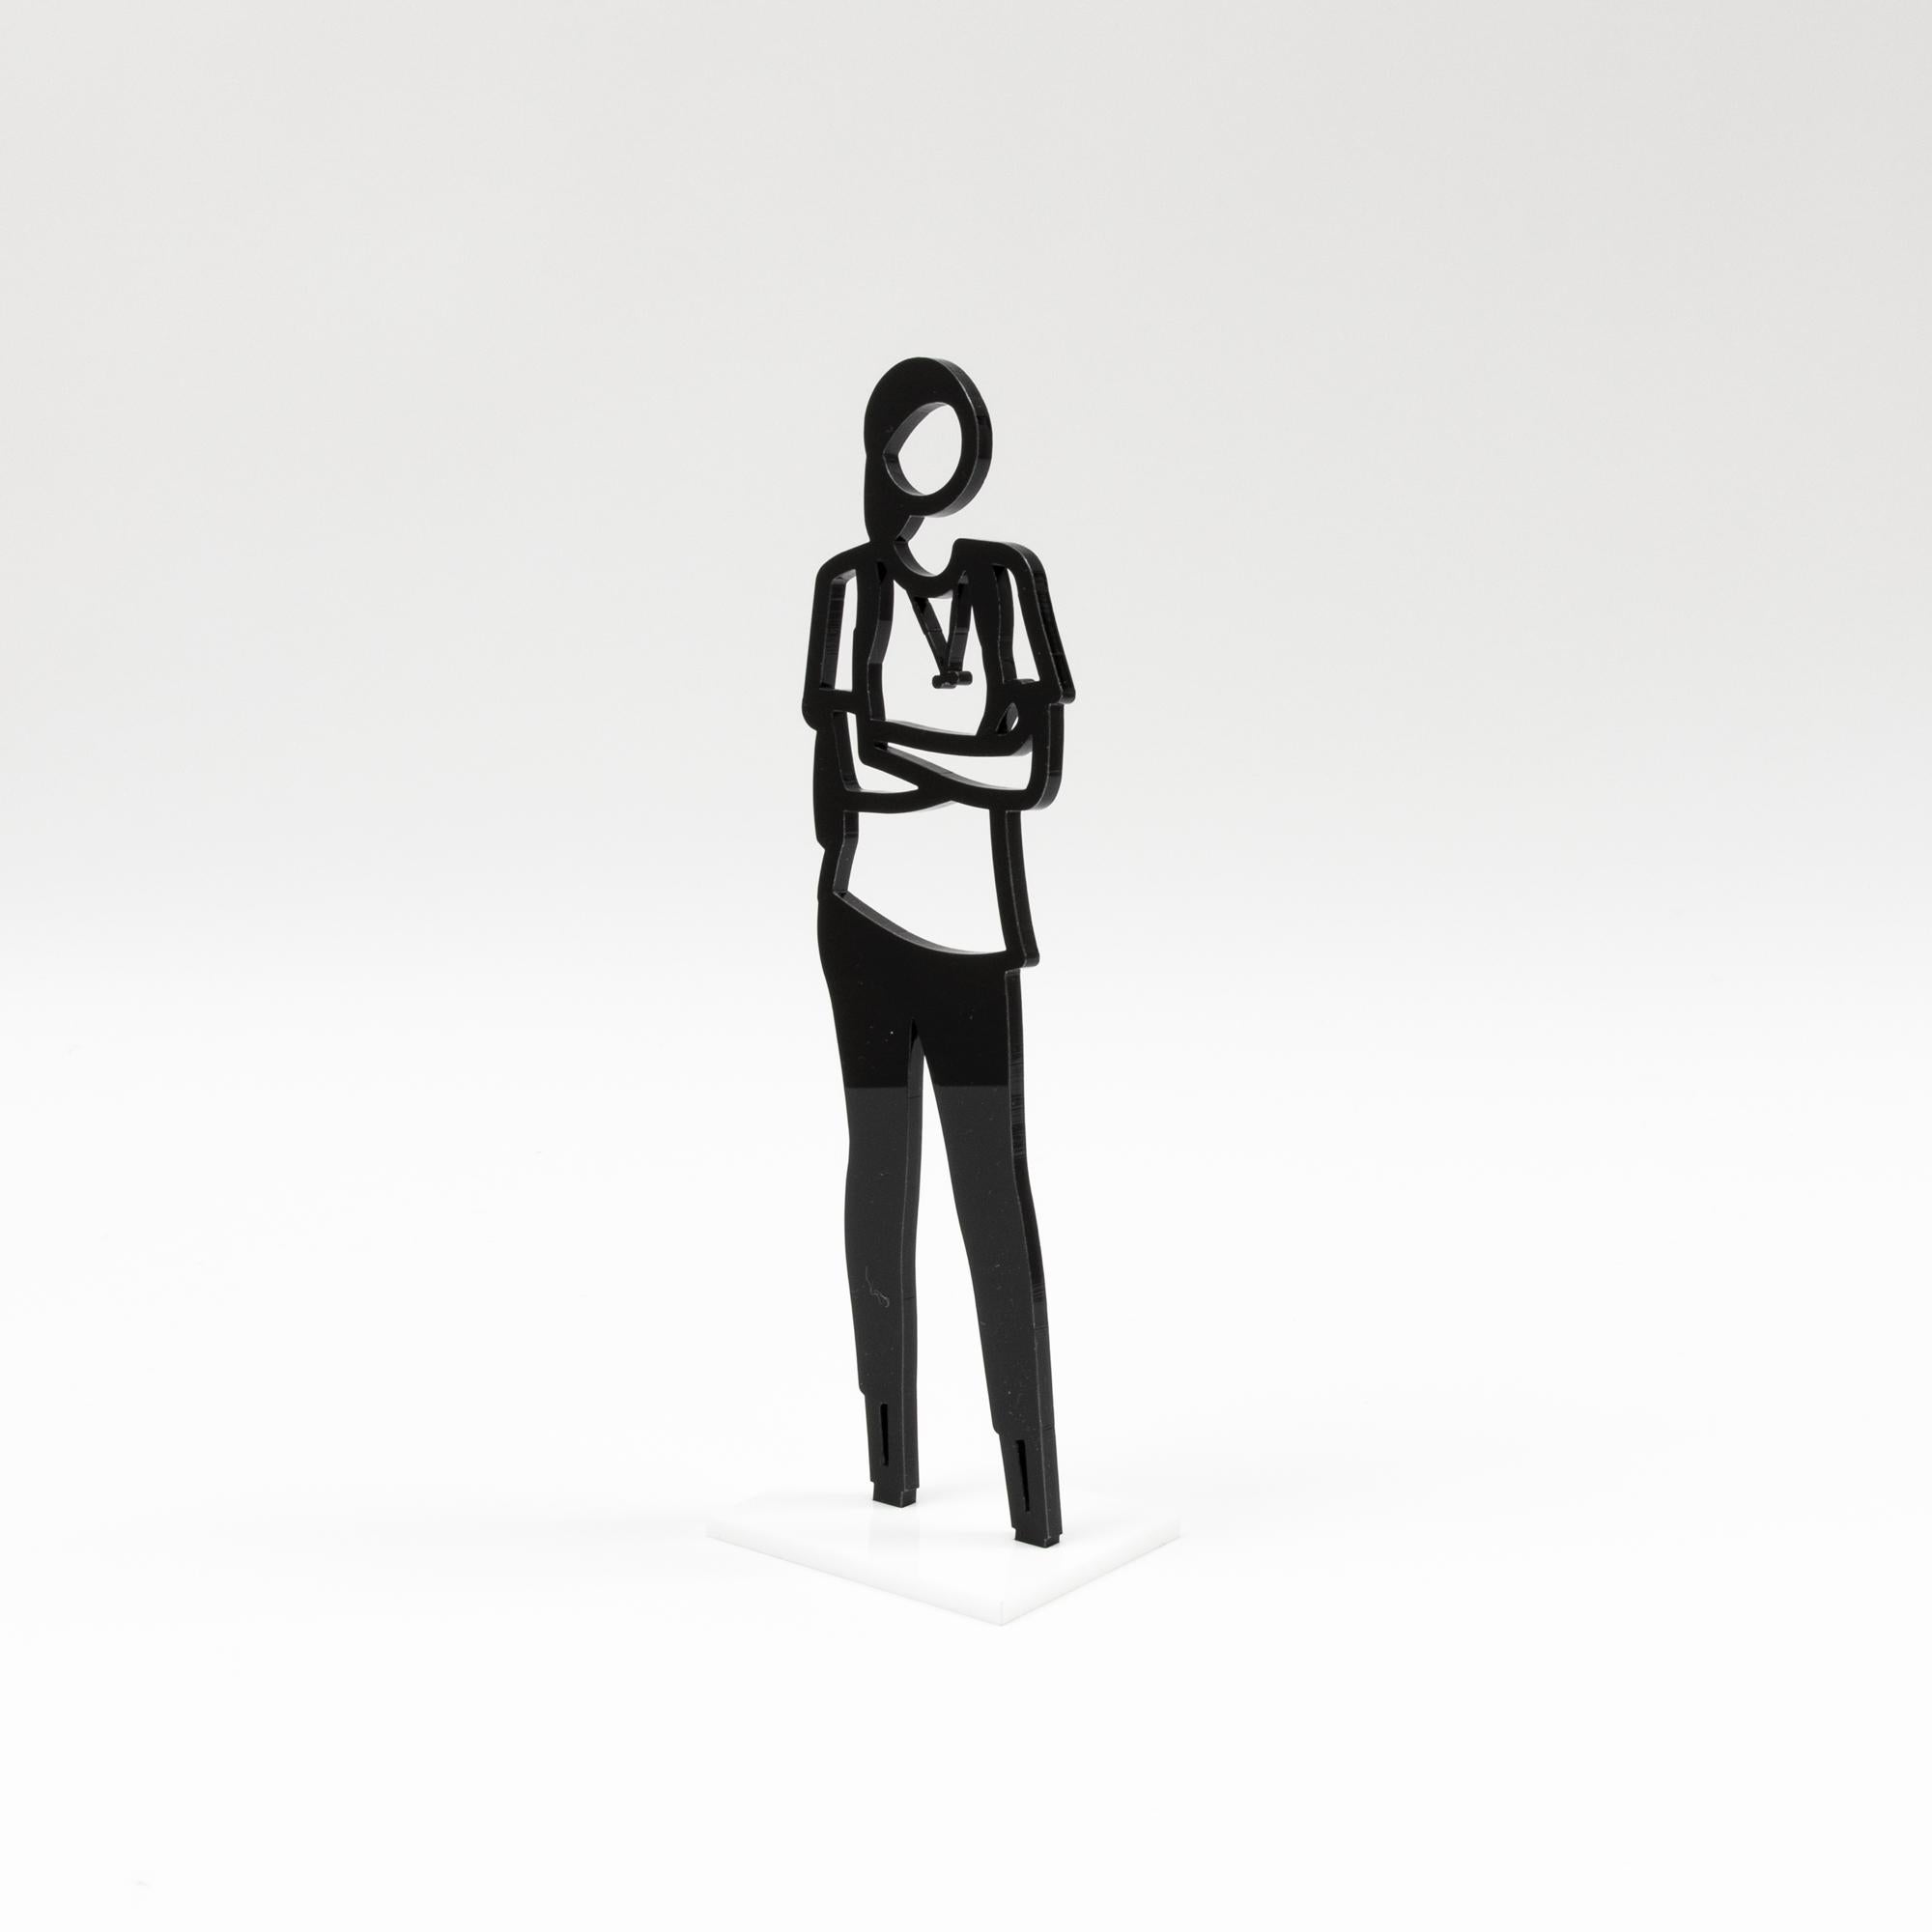 Julian Opie, Statuettes, Set of 8 Sculptures, British Pop Art, Contemporary Art 2